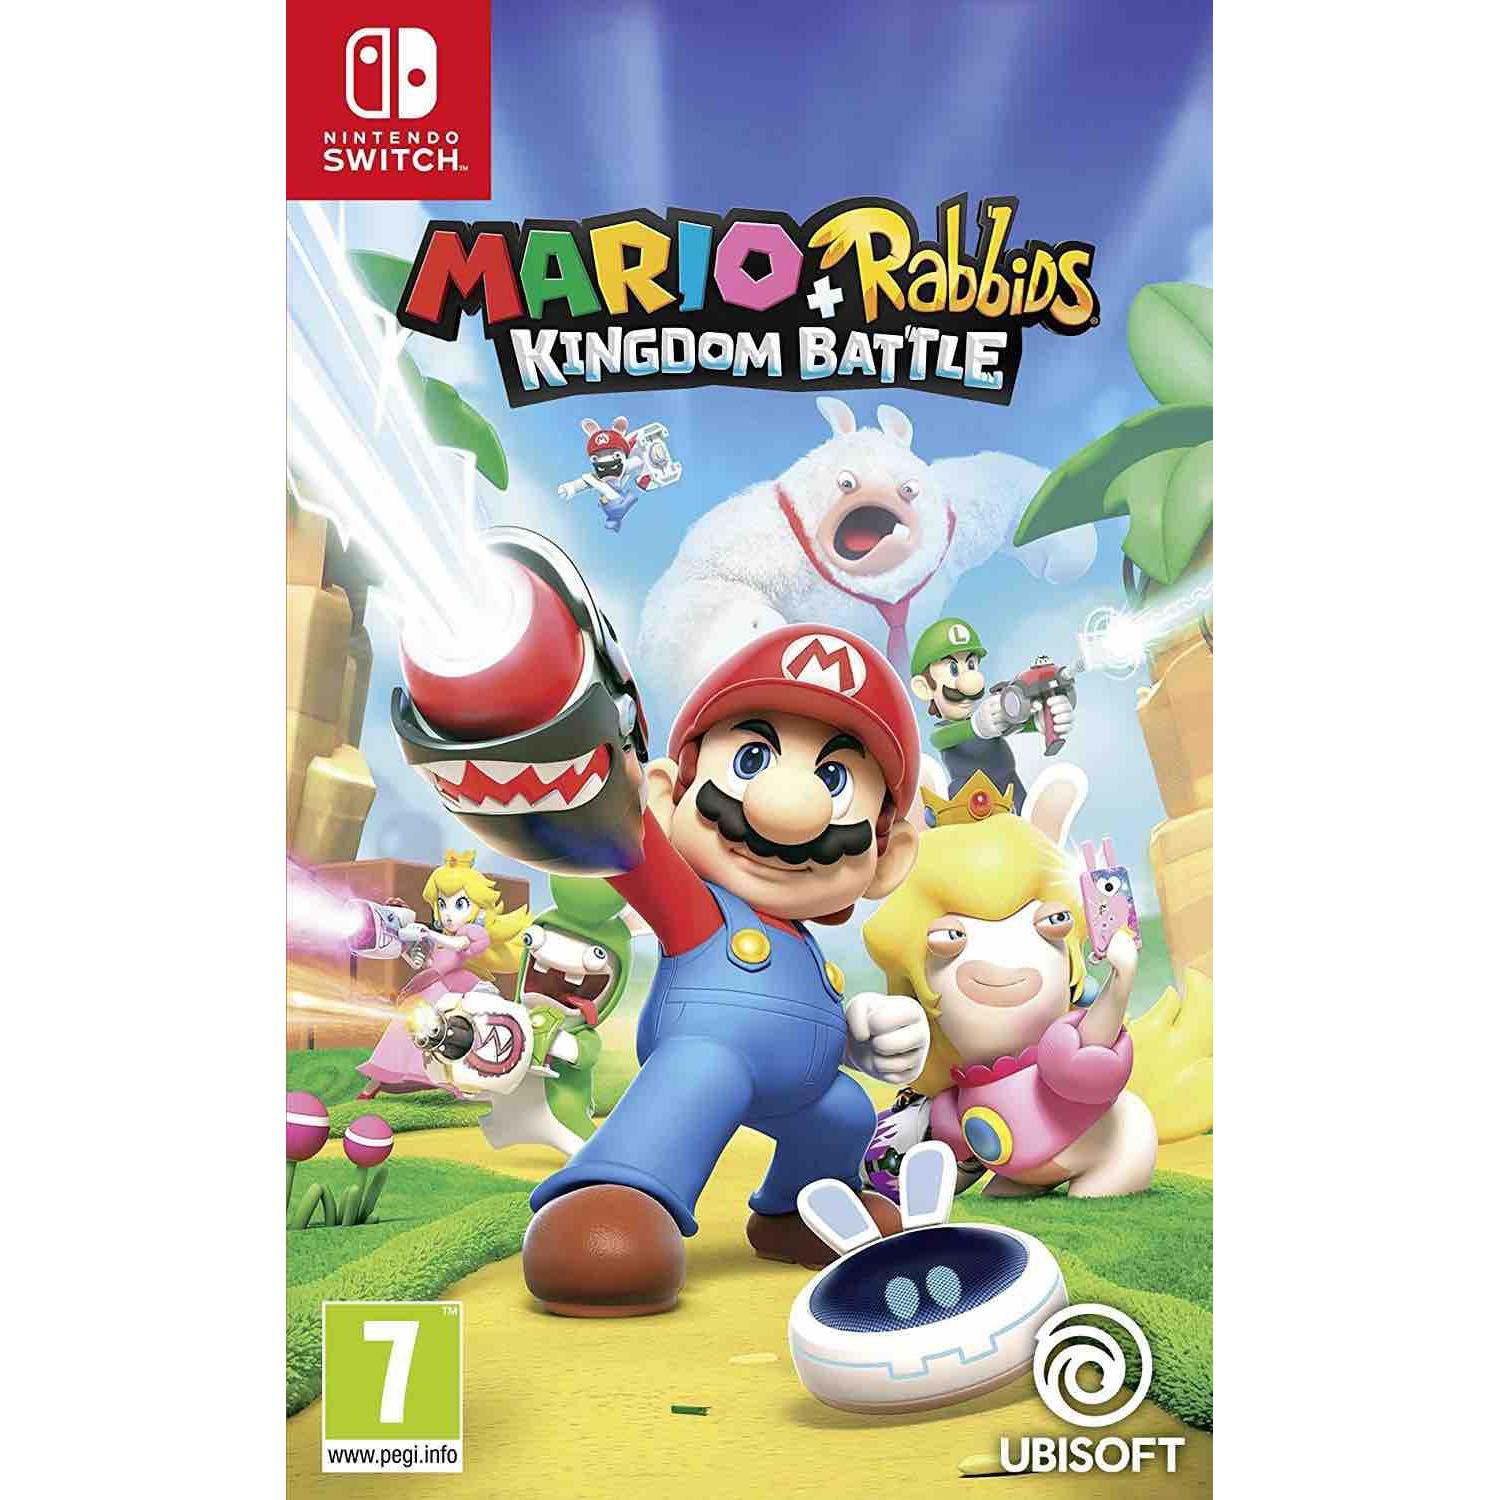 Switch - Mario + Rabbids Kingdom Battle - Nintendo Switch - Nuevo precintado - PAL España